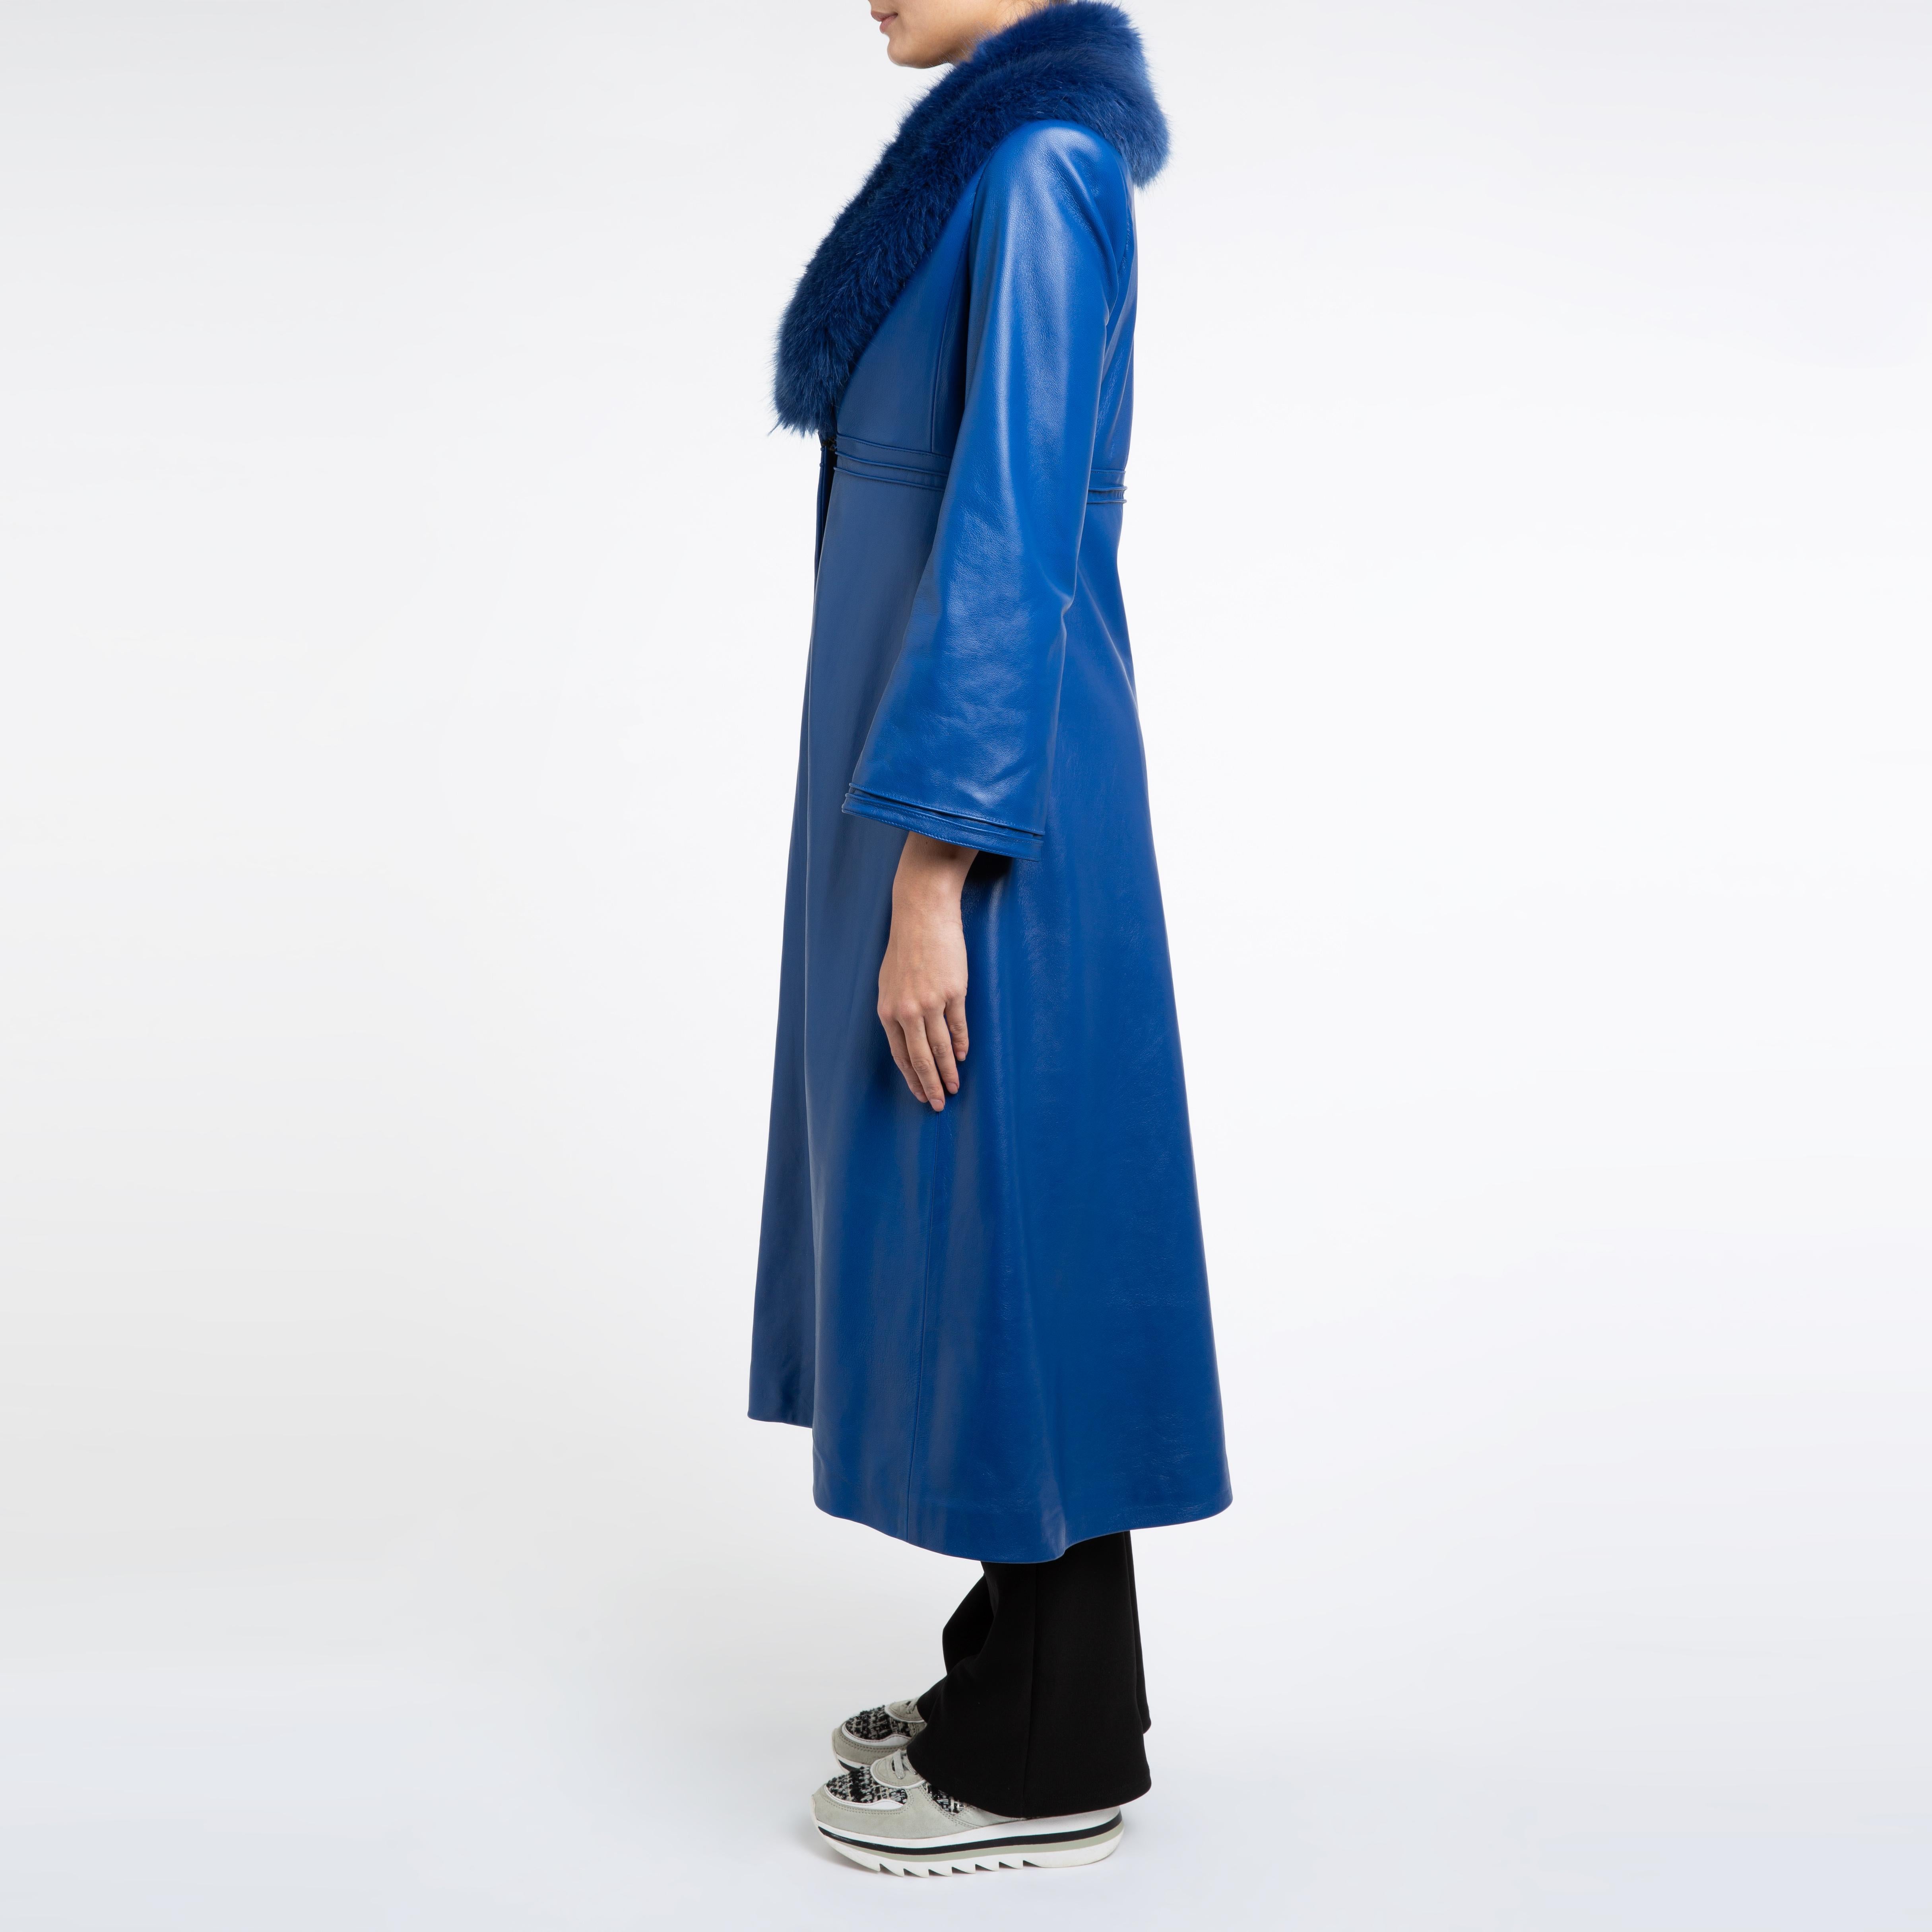 Women's Verheyen London Edward Leather Coat in Blue with Faux Fur - Size uk 12